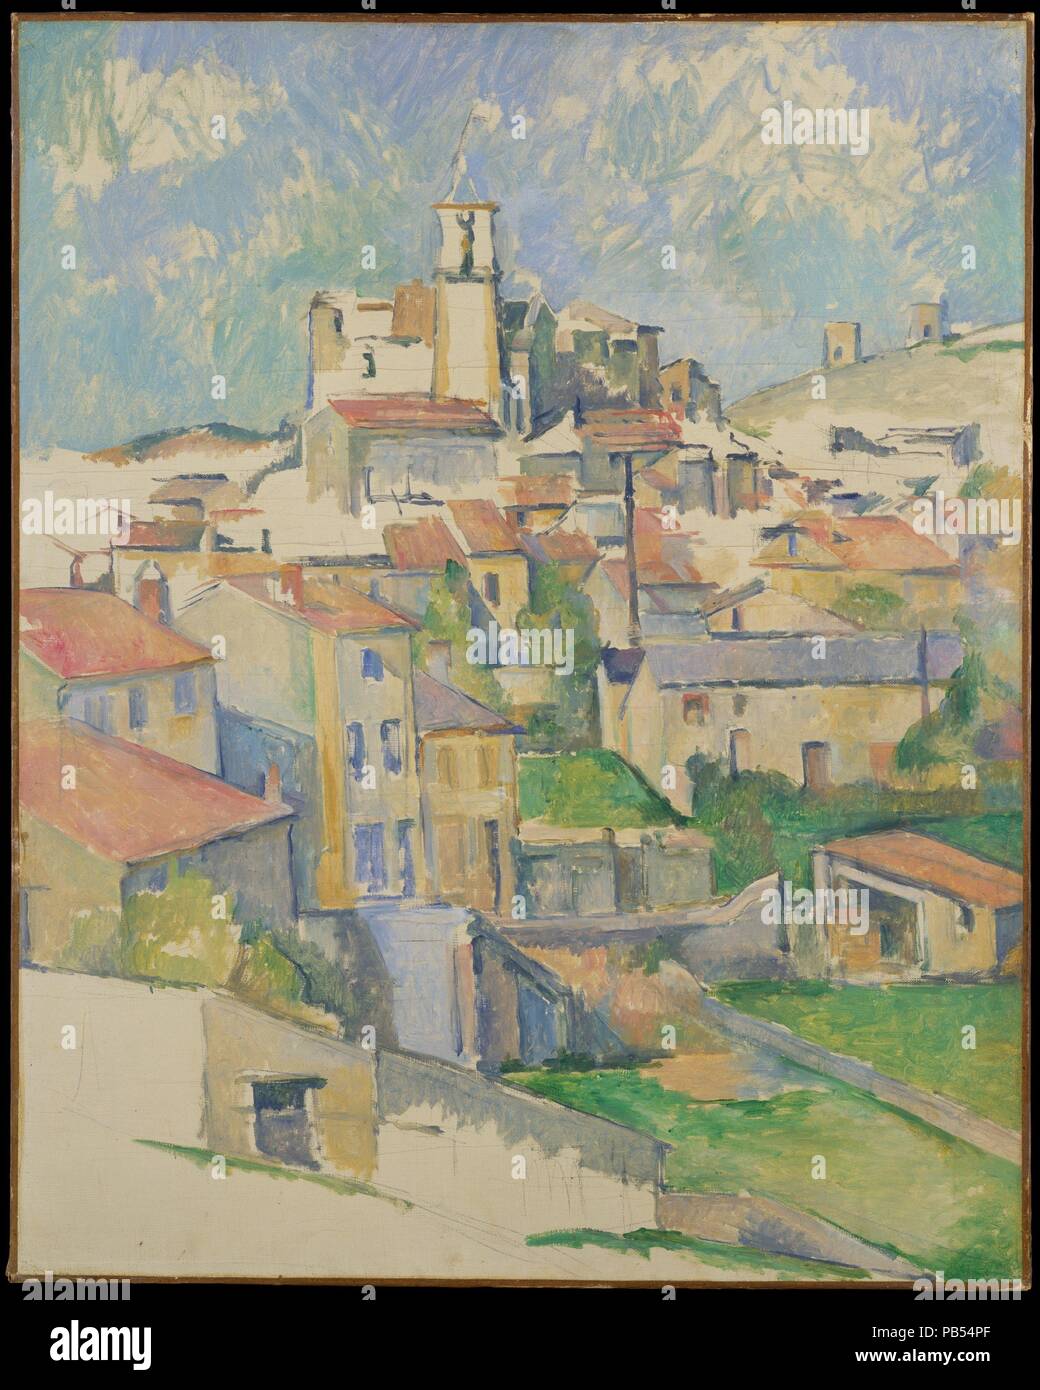 Gardanne. Artiste : Paul Cézanne (Français, Aix-en-Provence 1839-1906 Aix-en-Provence). Dimensions : 31 1/2 x 25 1/4 in. (80 x 64,1 cm). Date : 1885-1886. C'est l'une des trois vues de Gardanne, une colline près de la ville de Aix-en-Provence où Cézanne a travaillé à partir de l'été 1885 au printemps 1886. Le clocher de l'église locale couronne l'ensemble de bâtiments aux toits rouges qui anime les terrains en pente. Facettes et géométriques, les structures d'anticiper le début du xxe siècle, le Cubisme. Musée : Metropolitan Museum of Art, New York, USA. Banque D'Images